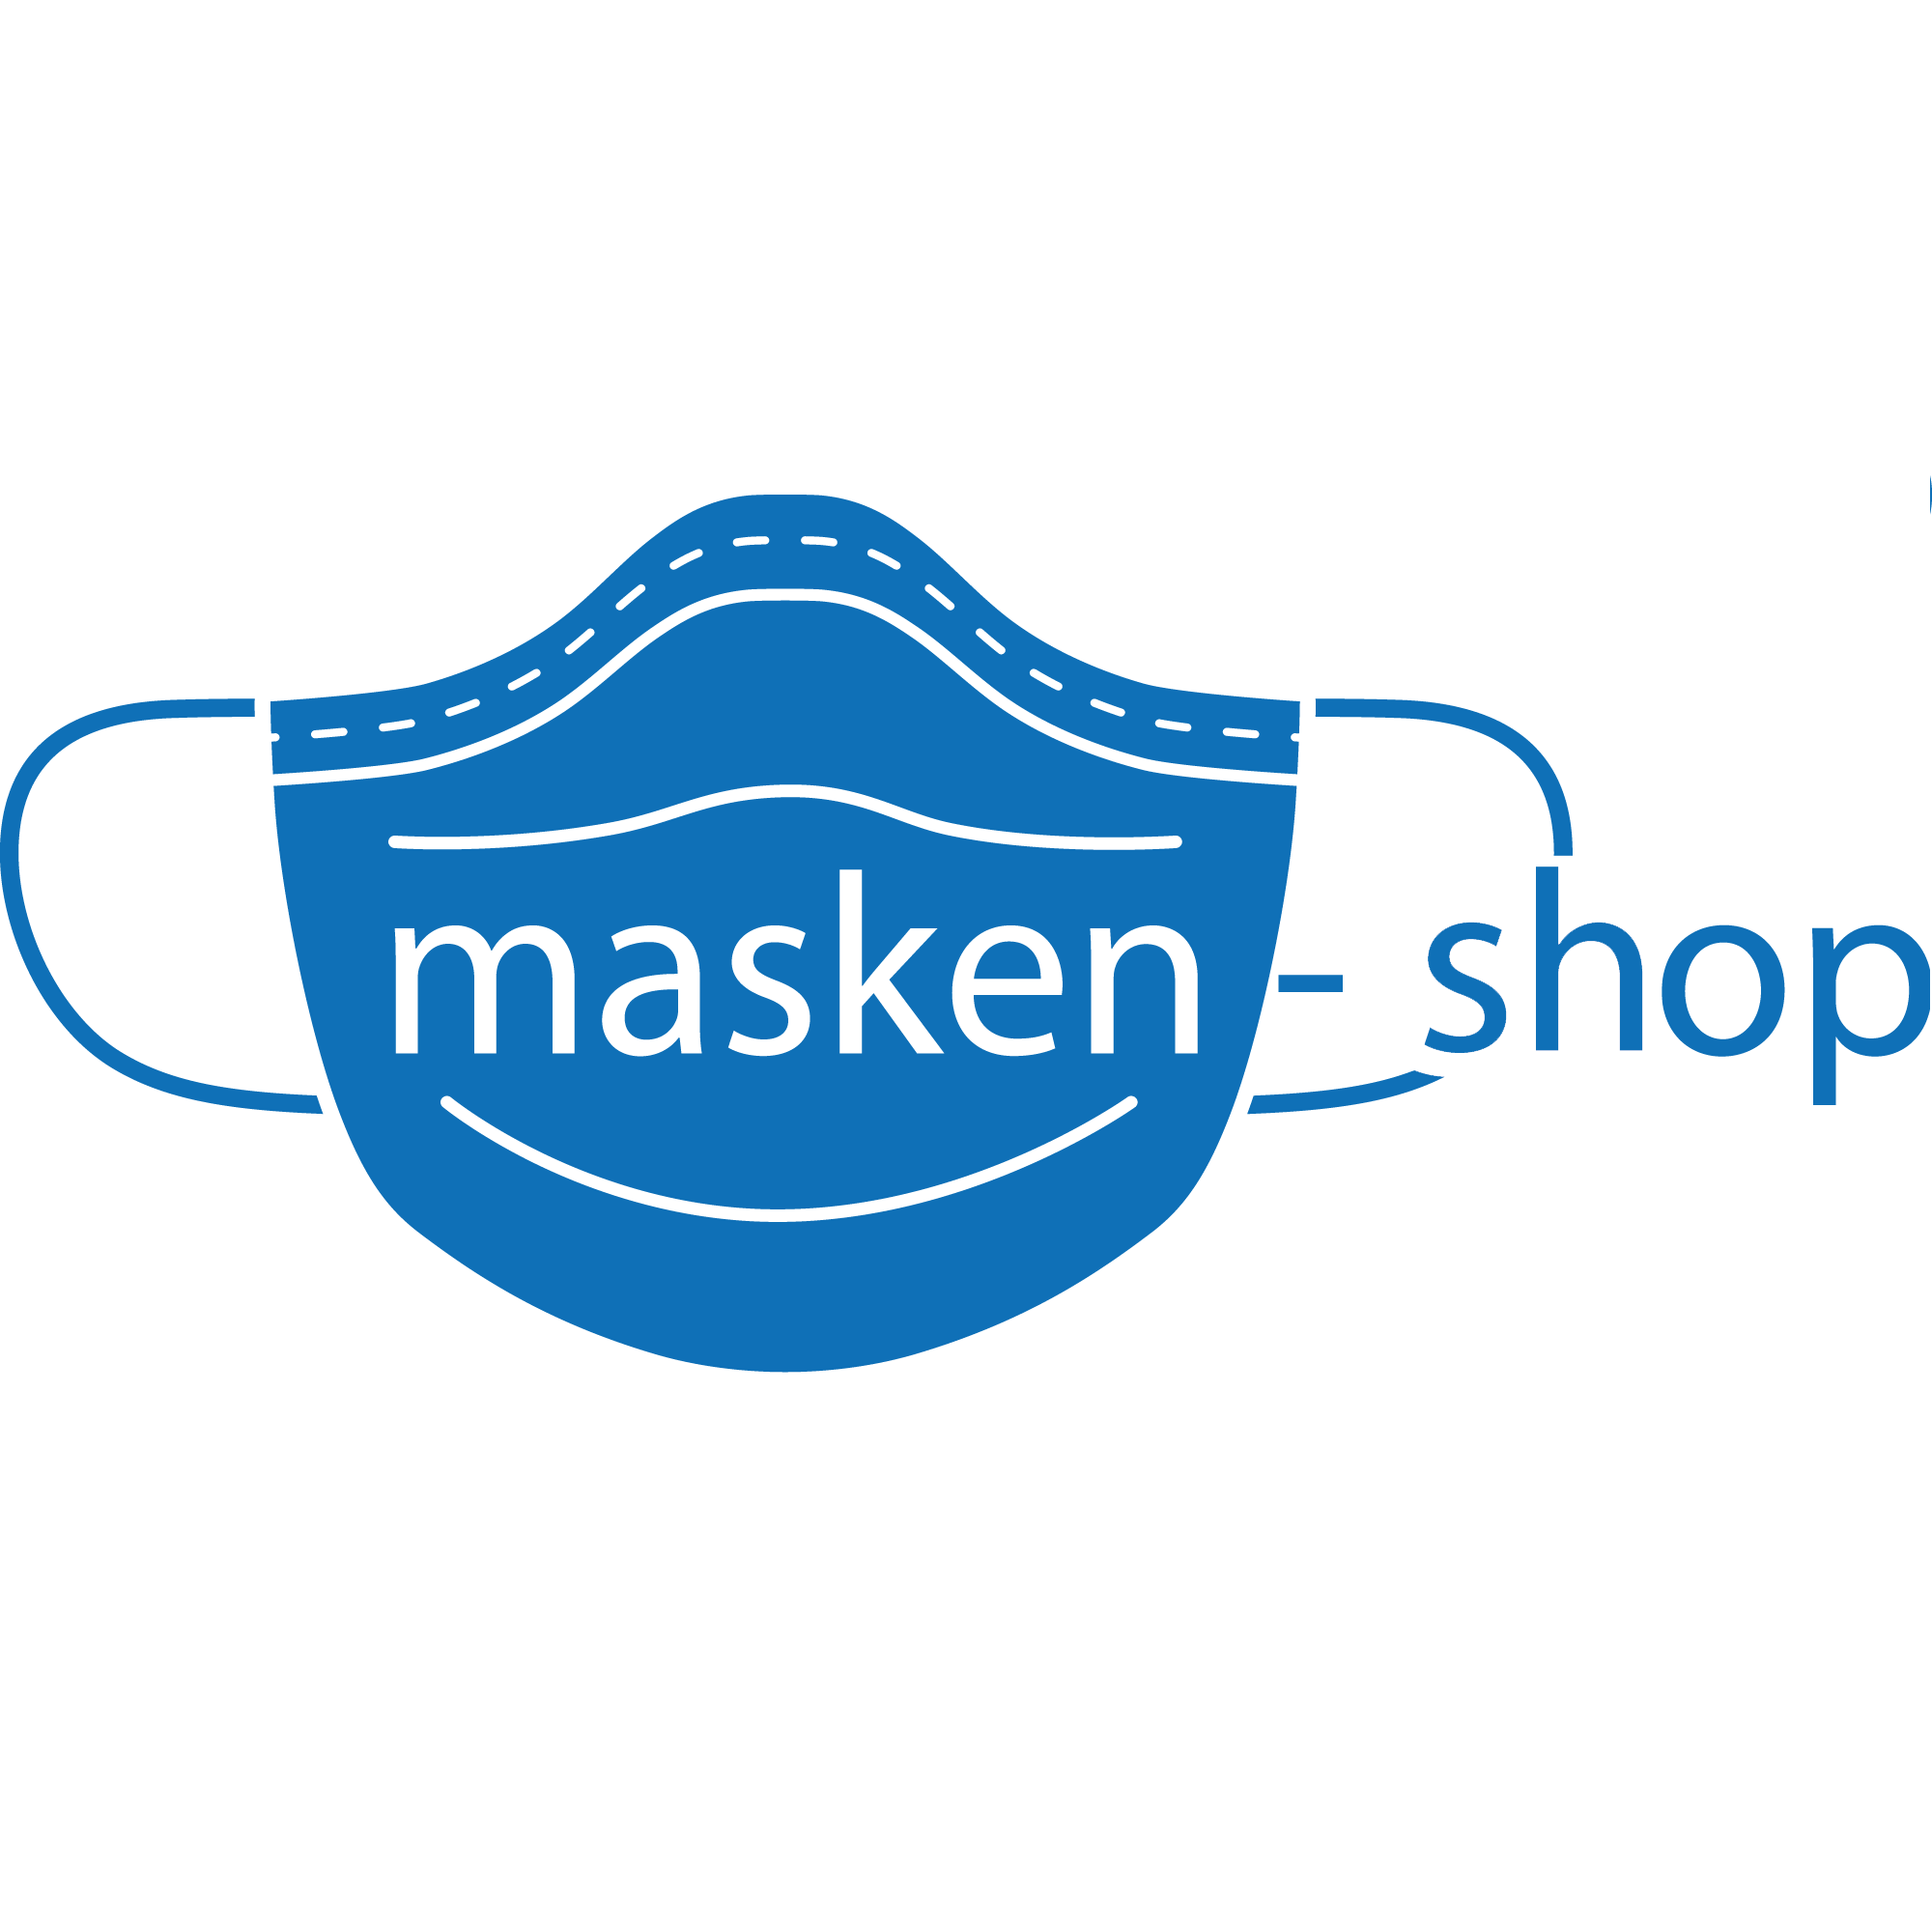 (c) Masken-shop.at